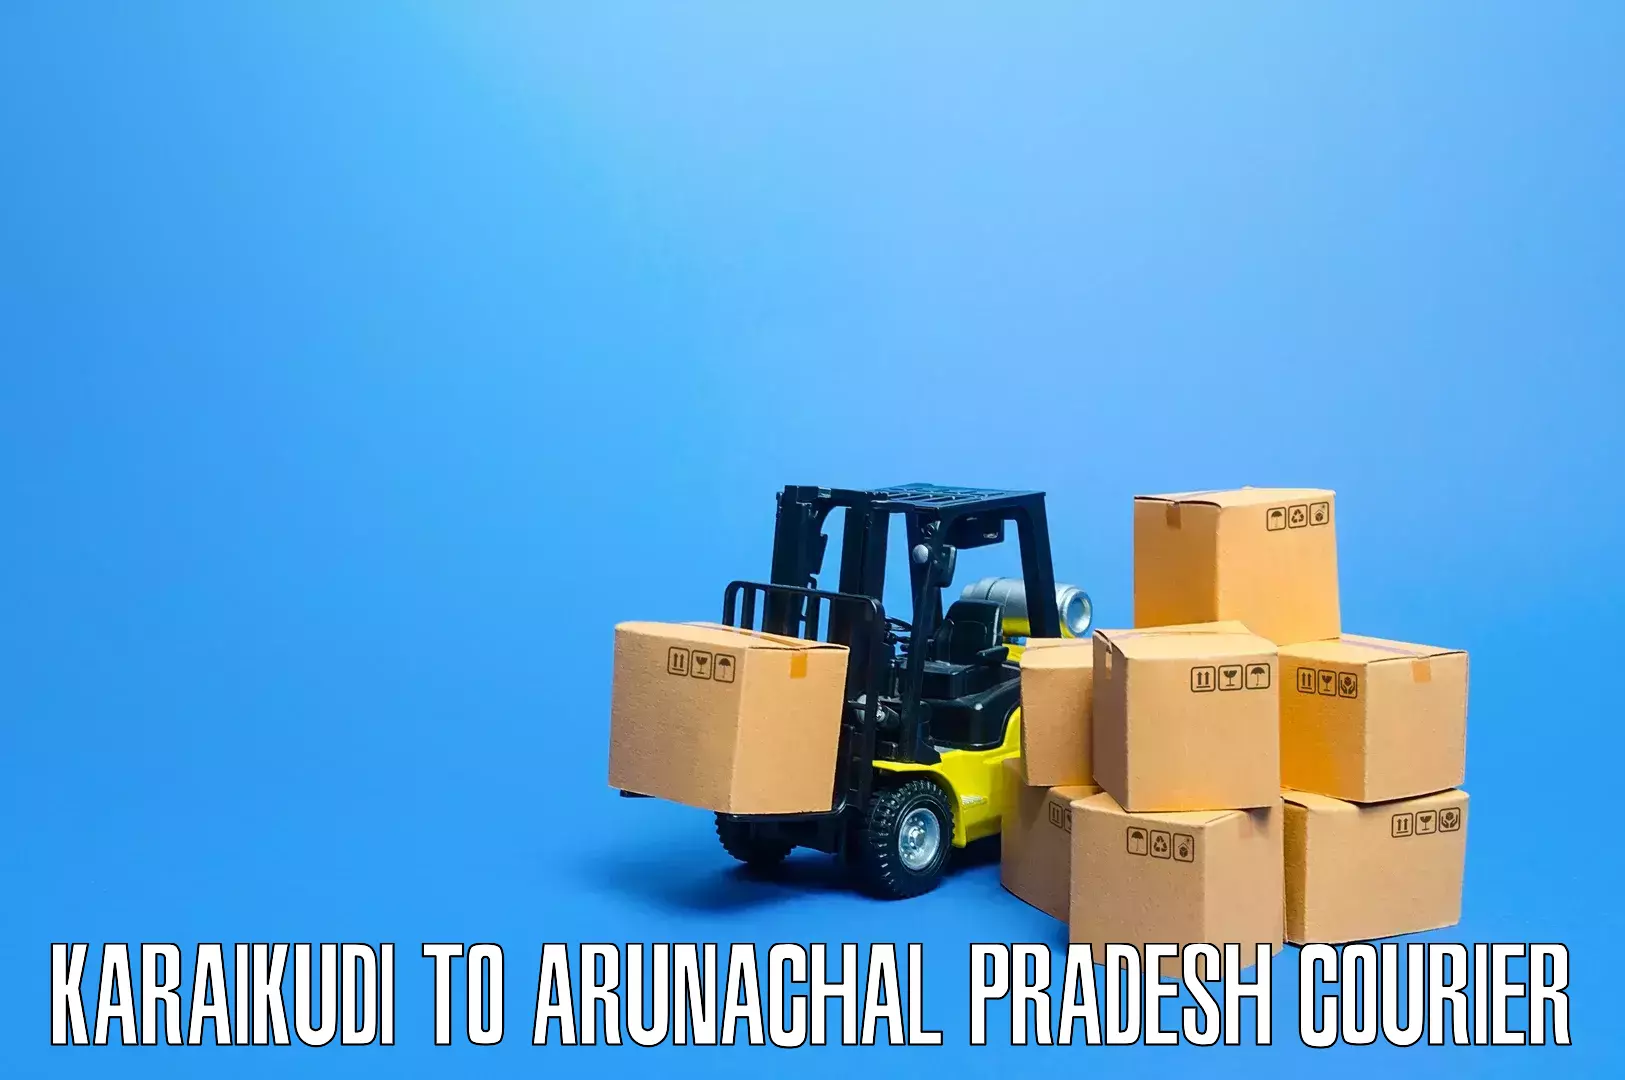 Furniture transport specialists Karaikudi to Arunachal Pradesh